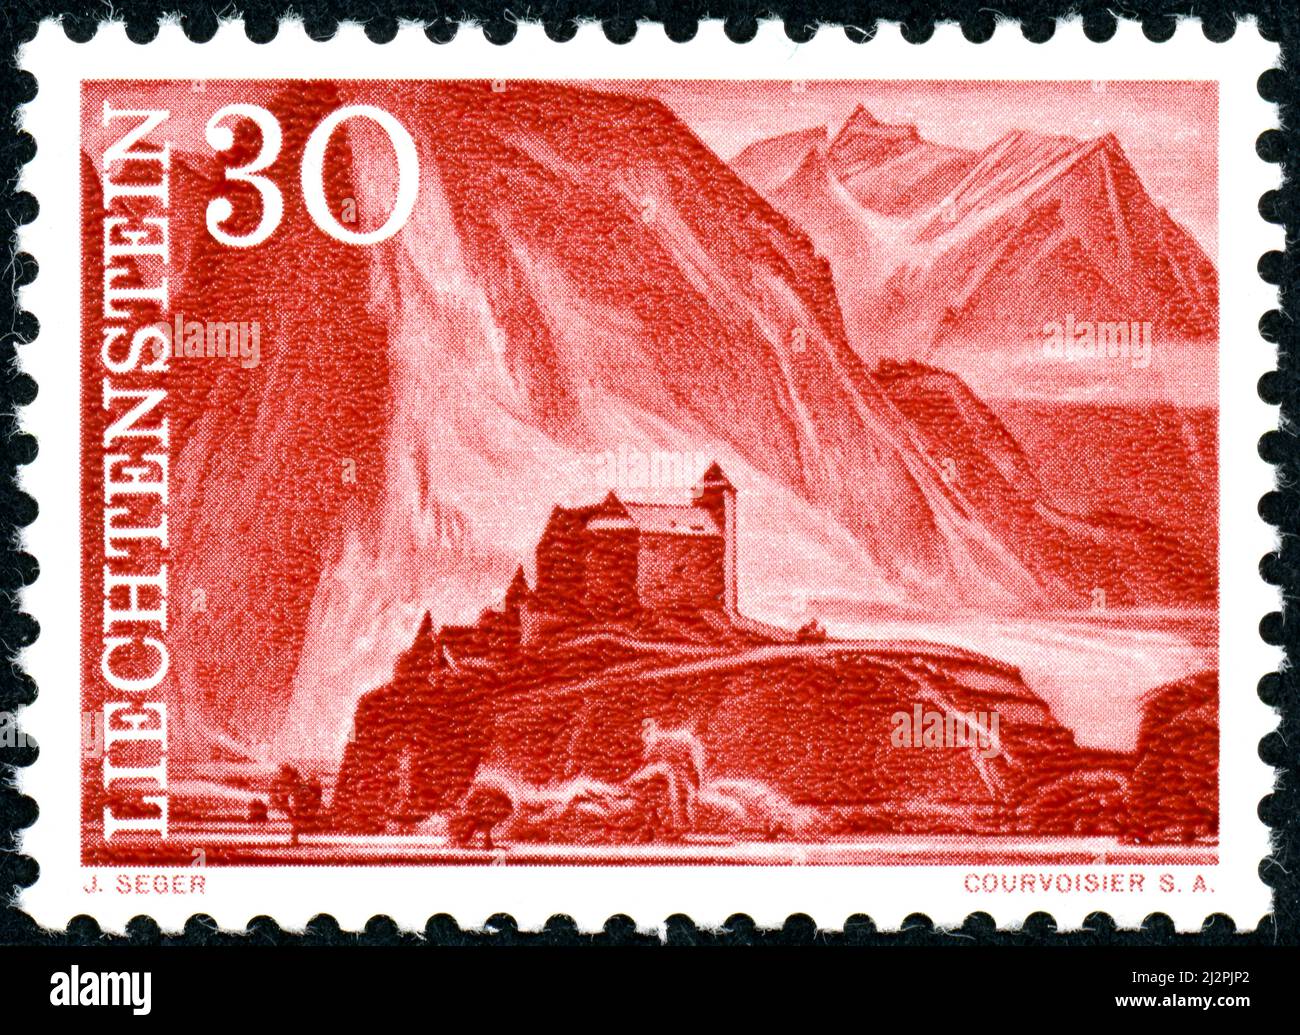 LIECHTENSTEIN - CIRCA 1959: A postal stamp printed in Liechtenstein, showing Gutenberg castle, circa 1959 Stock Photo